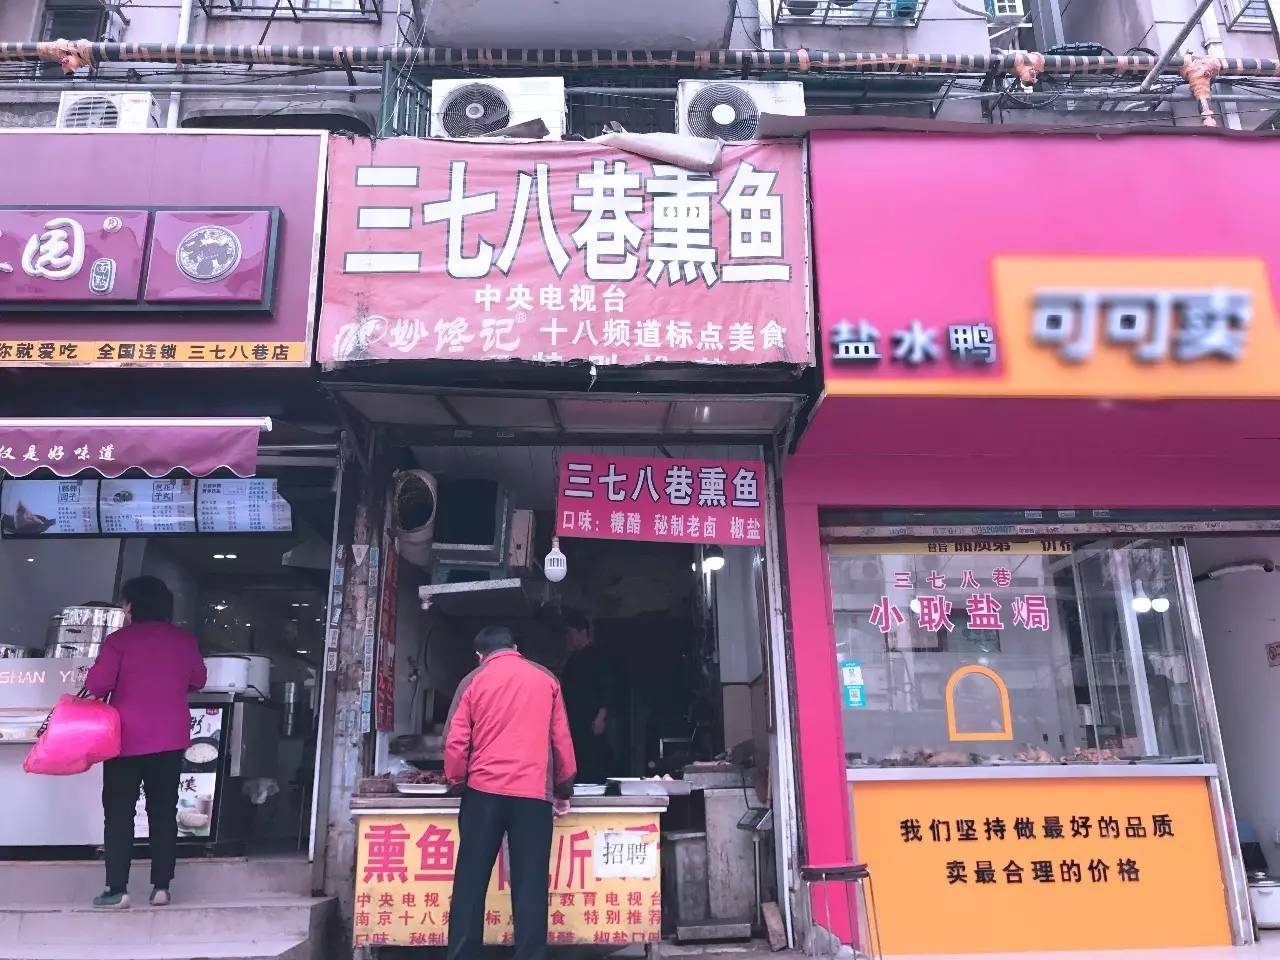 对老南京人来说，三七八巷就是全宇宙最好吃的地方。